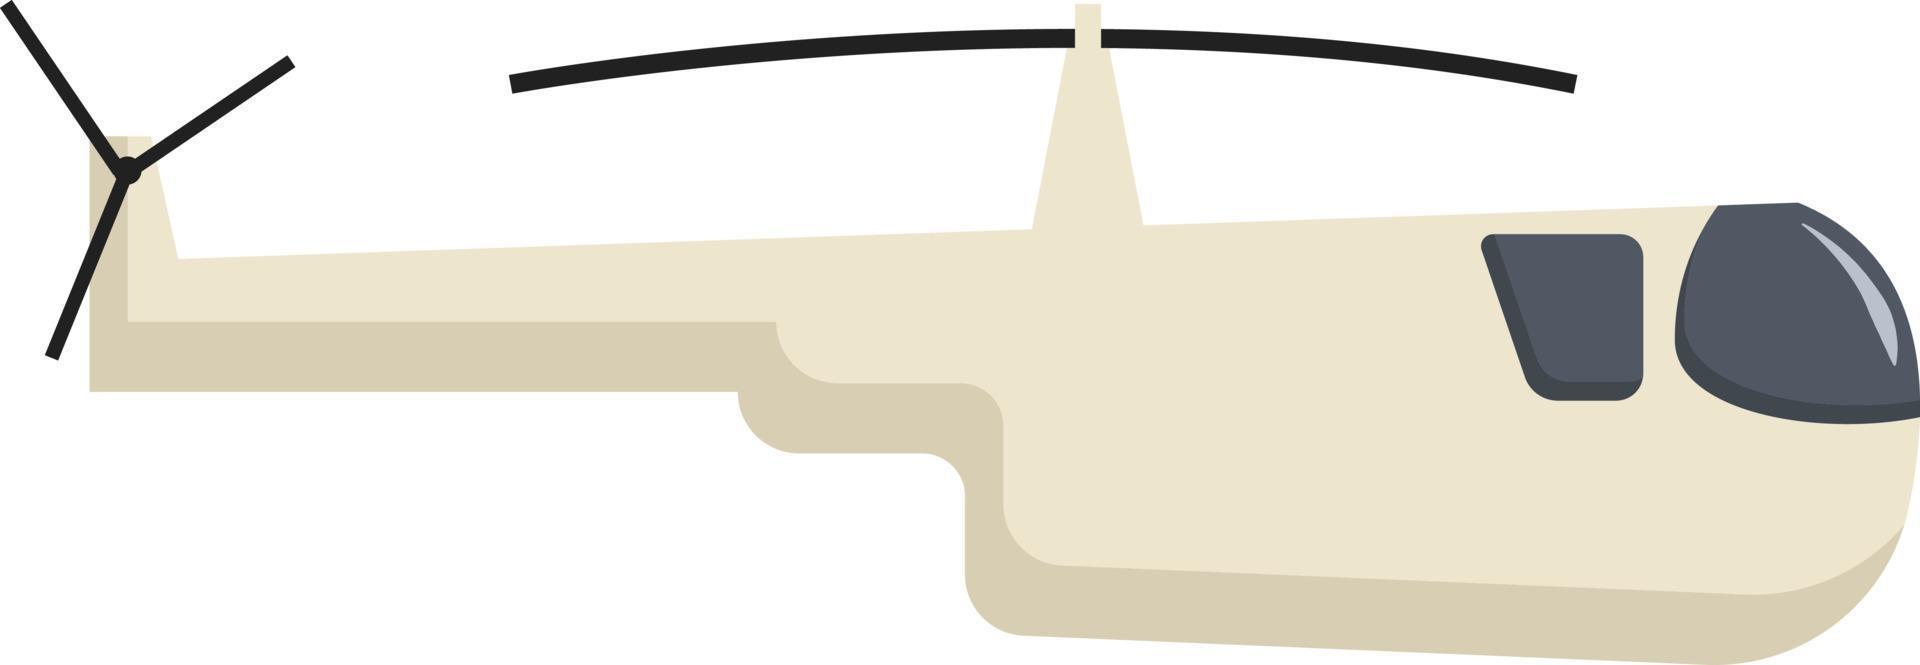 helicóptero, ilustración, vector sobre fondo blanco.